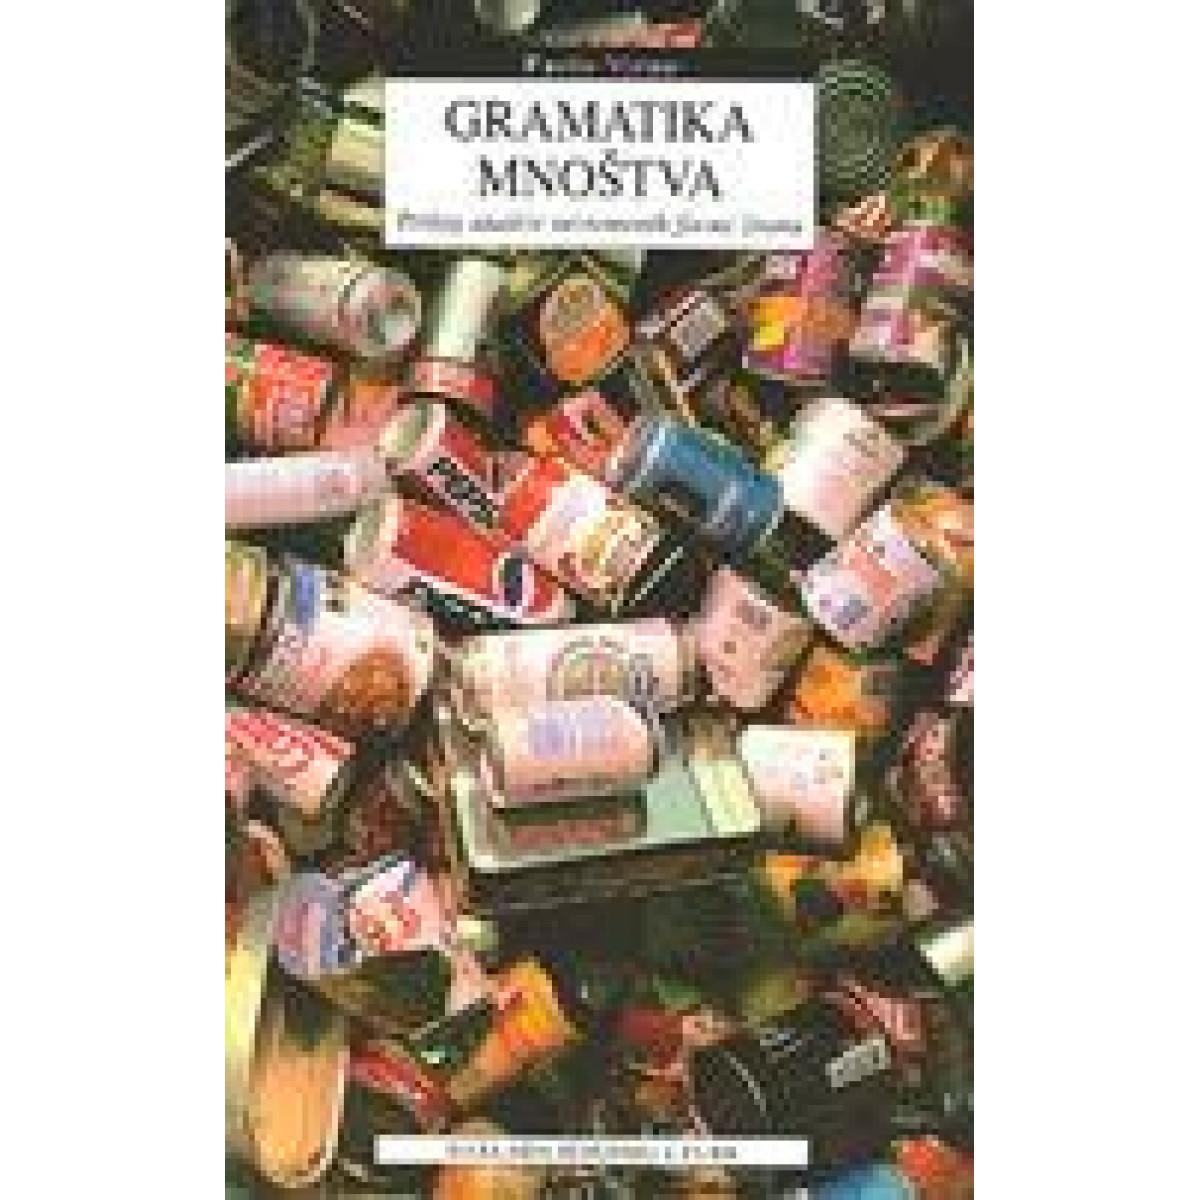 Gramatika mnoštva - Prilog analizi suvremenih formi života